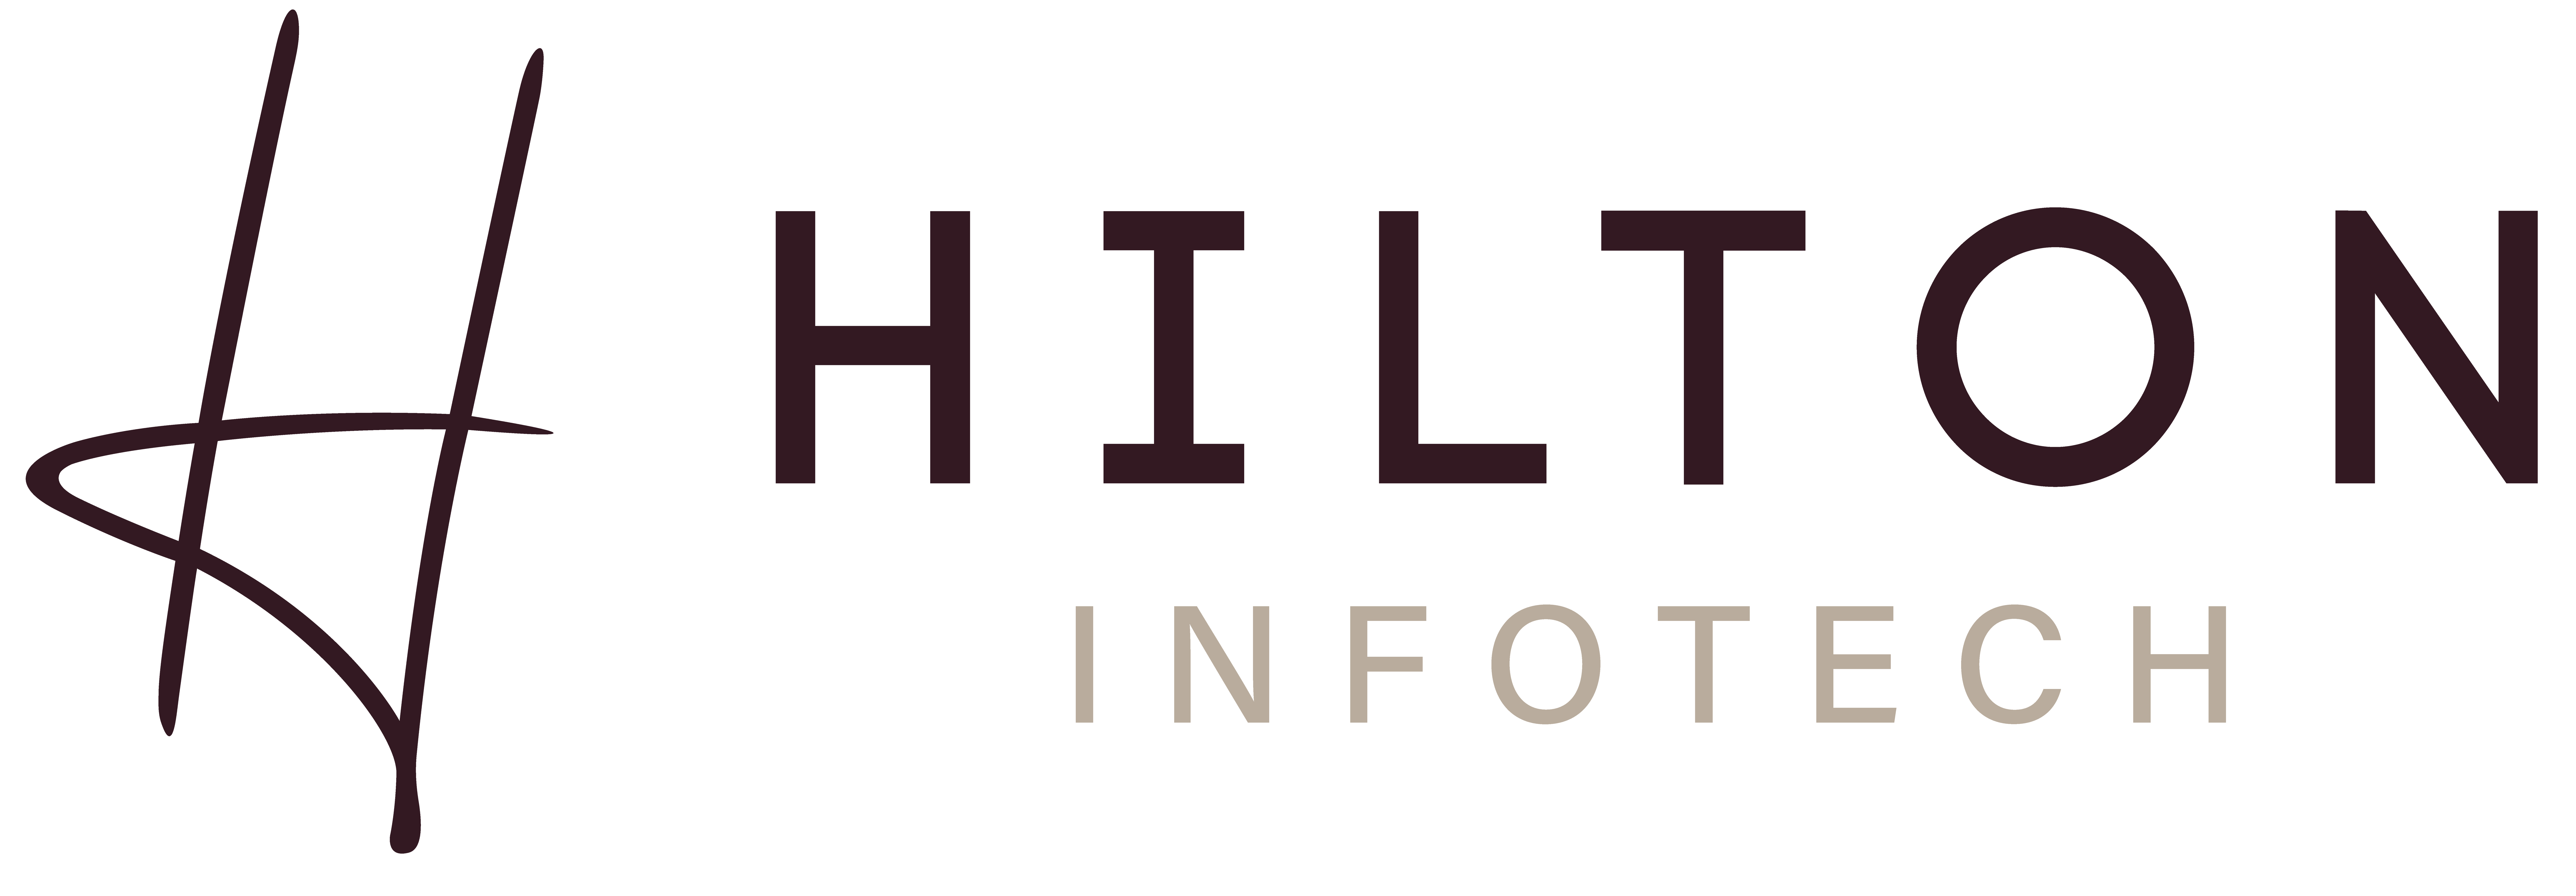 Hilton Infotech